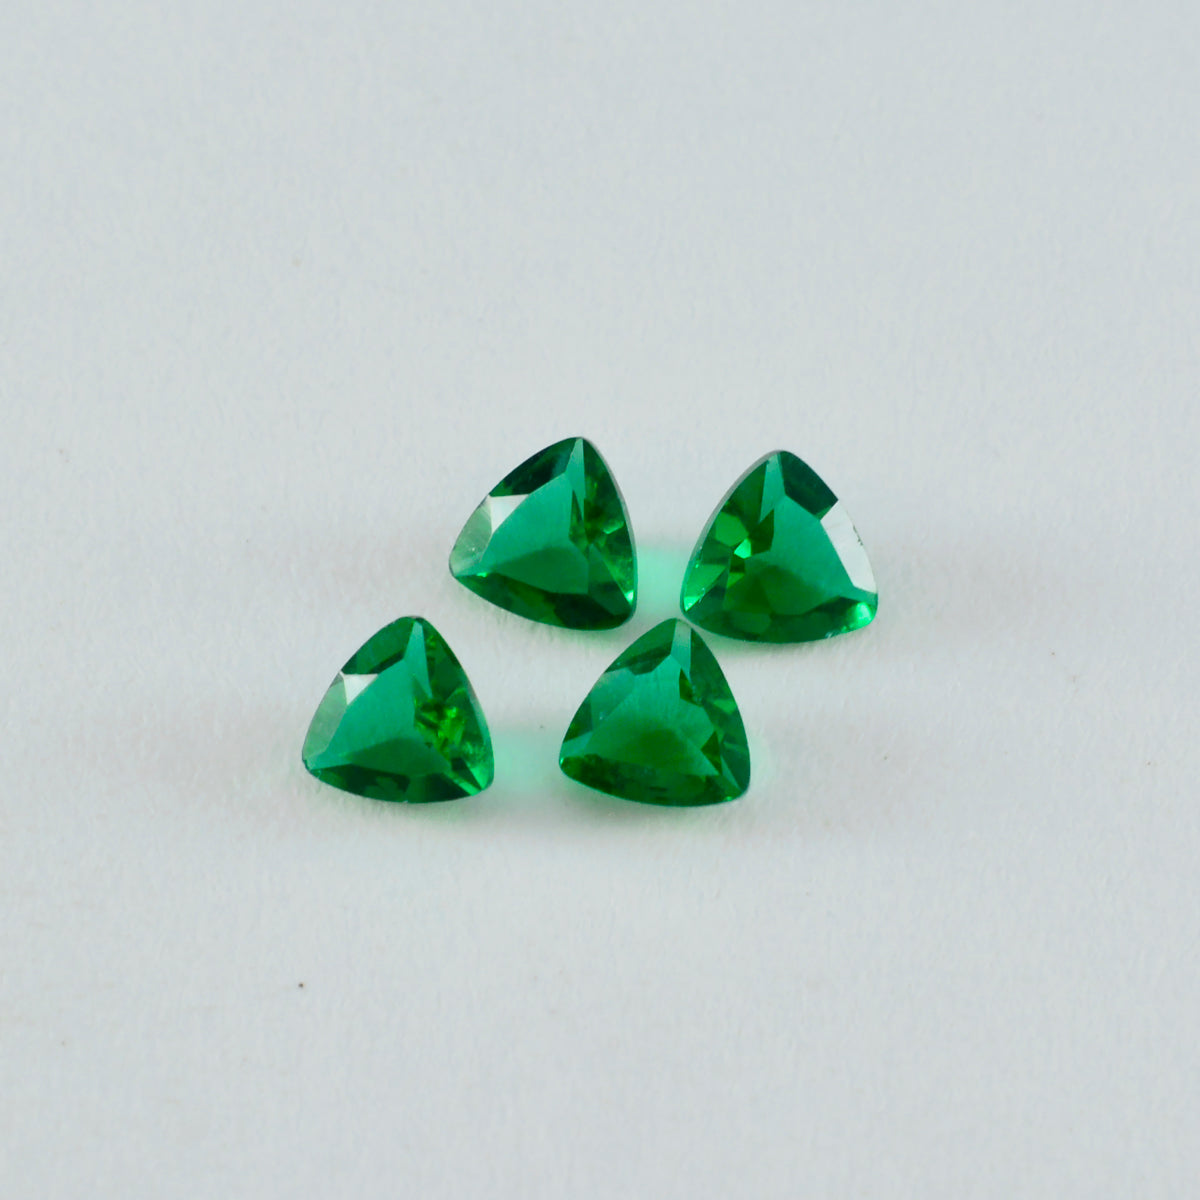 Riyogems 1 pieza Esmeralda verde CZ facetada 9x9 mm forma de trillón piedra suelta de calidad Linda